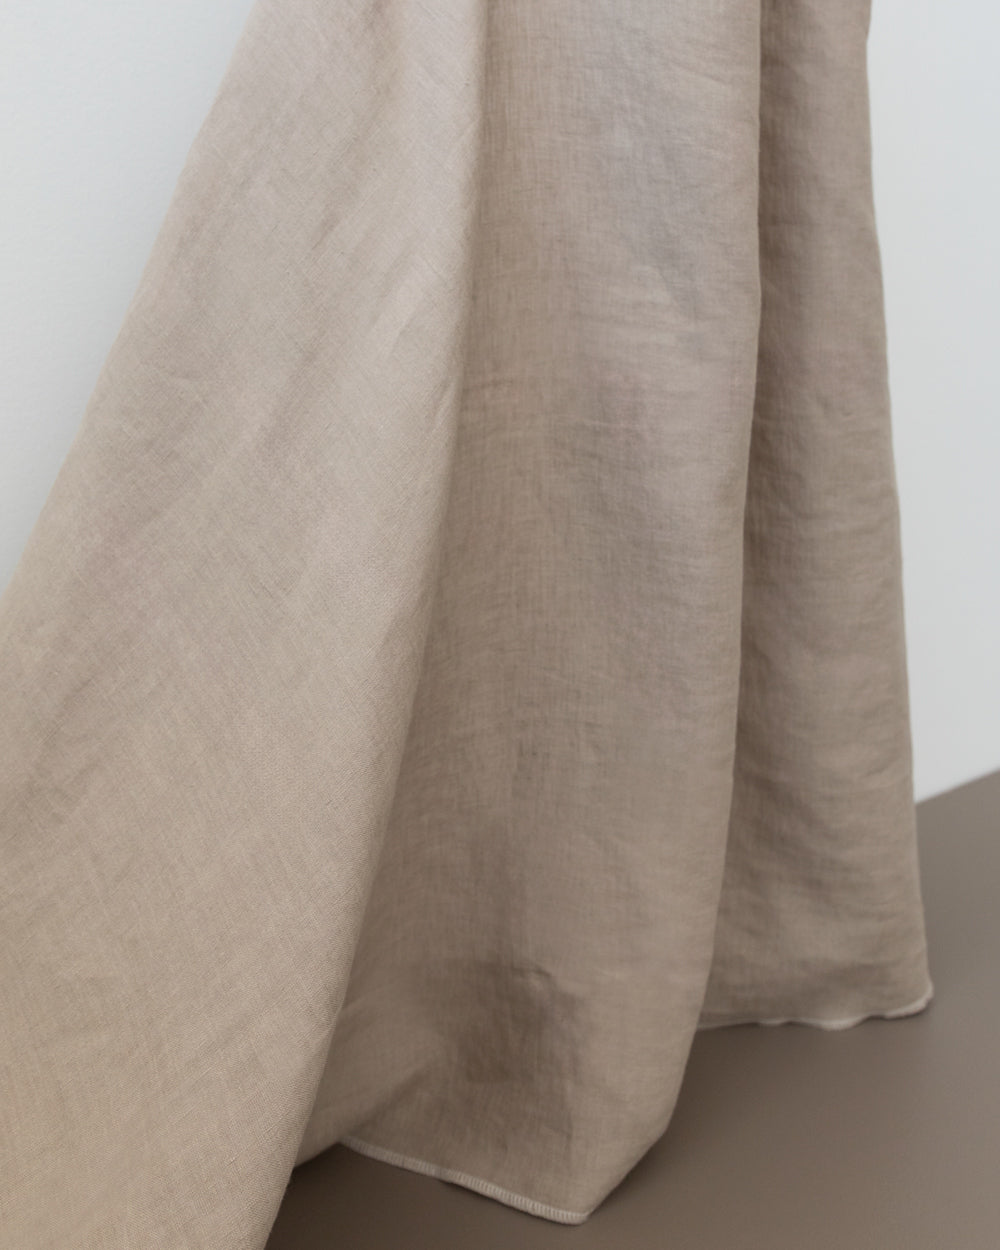 Meara Double-Wide Linen Fabric, Limed Oak